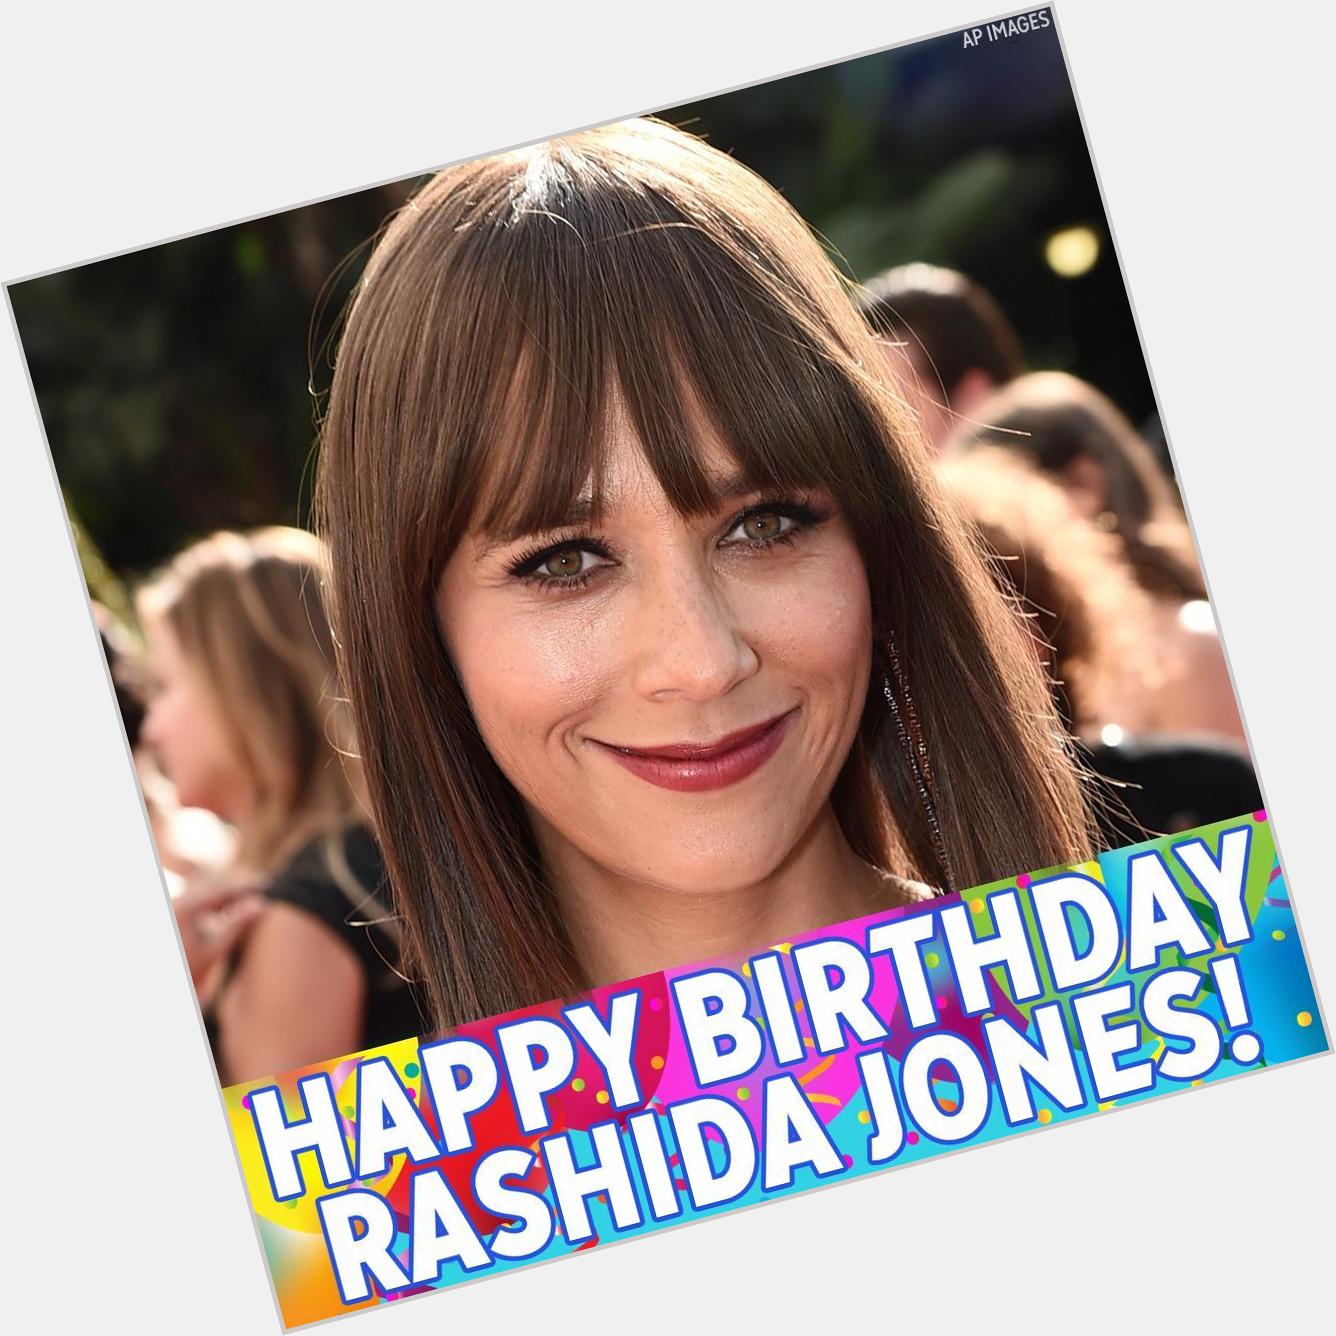 Happy birthday to Rashida Jones! 